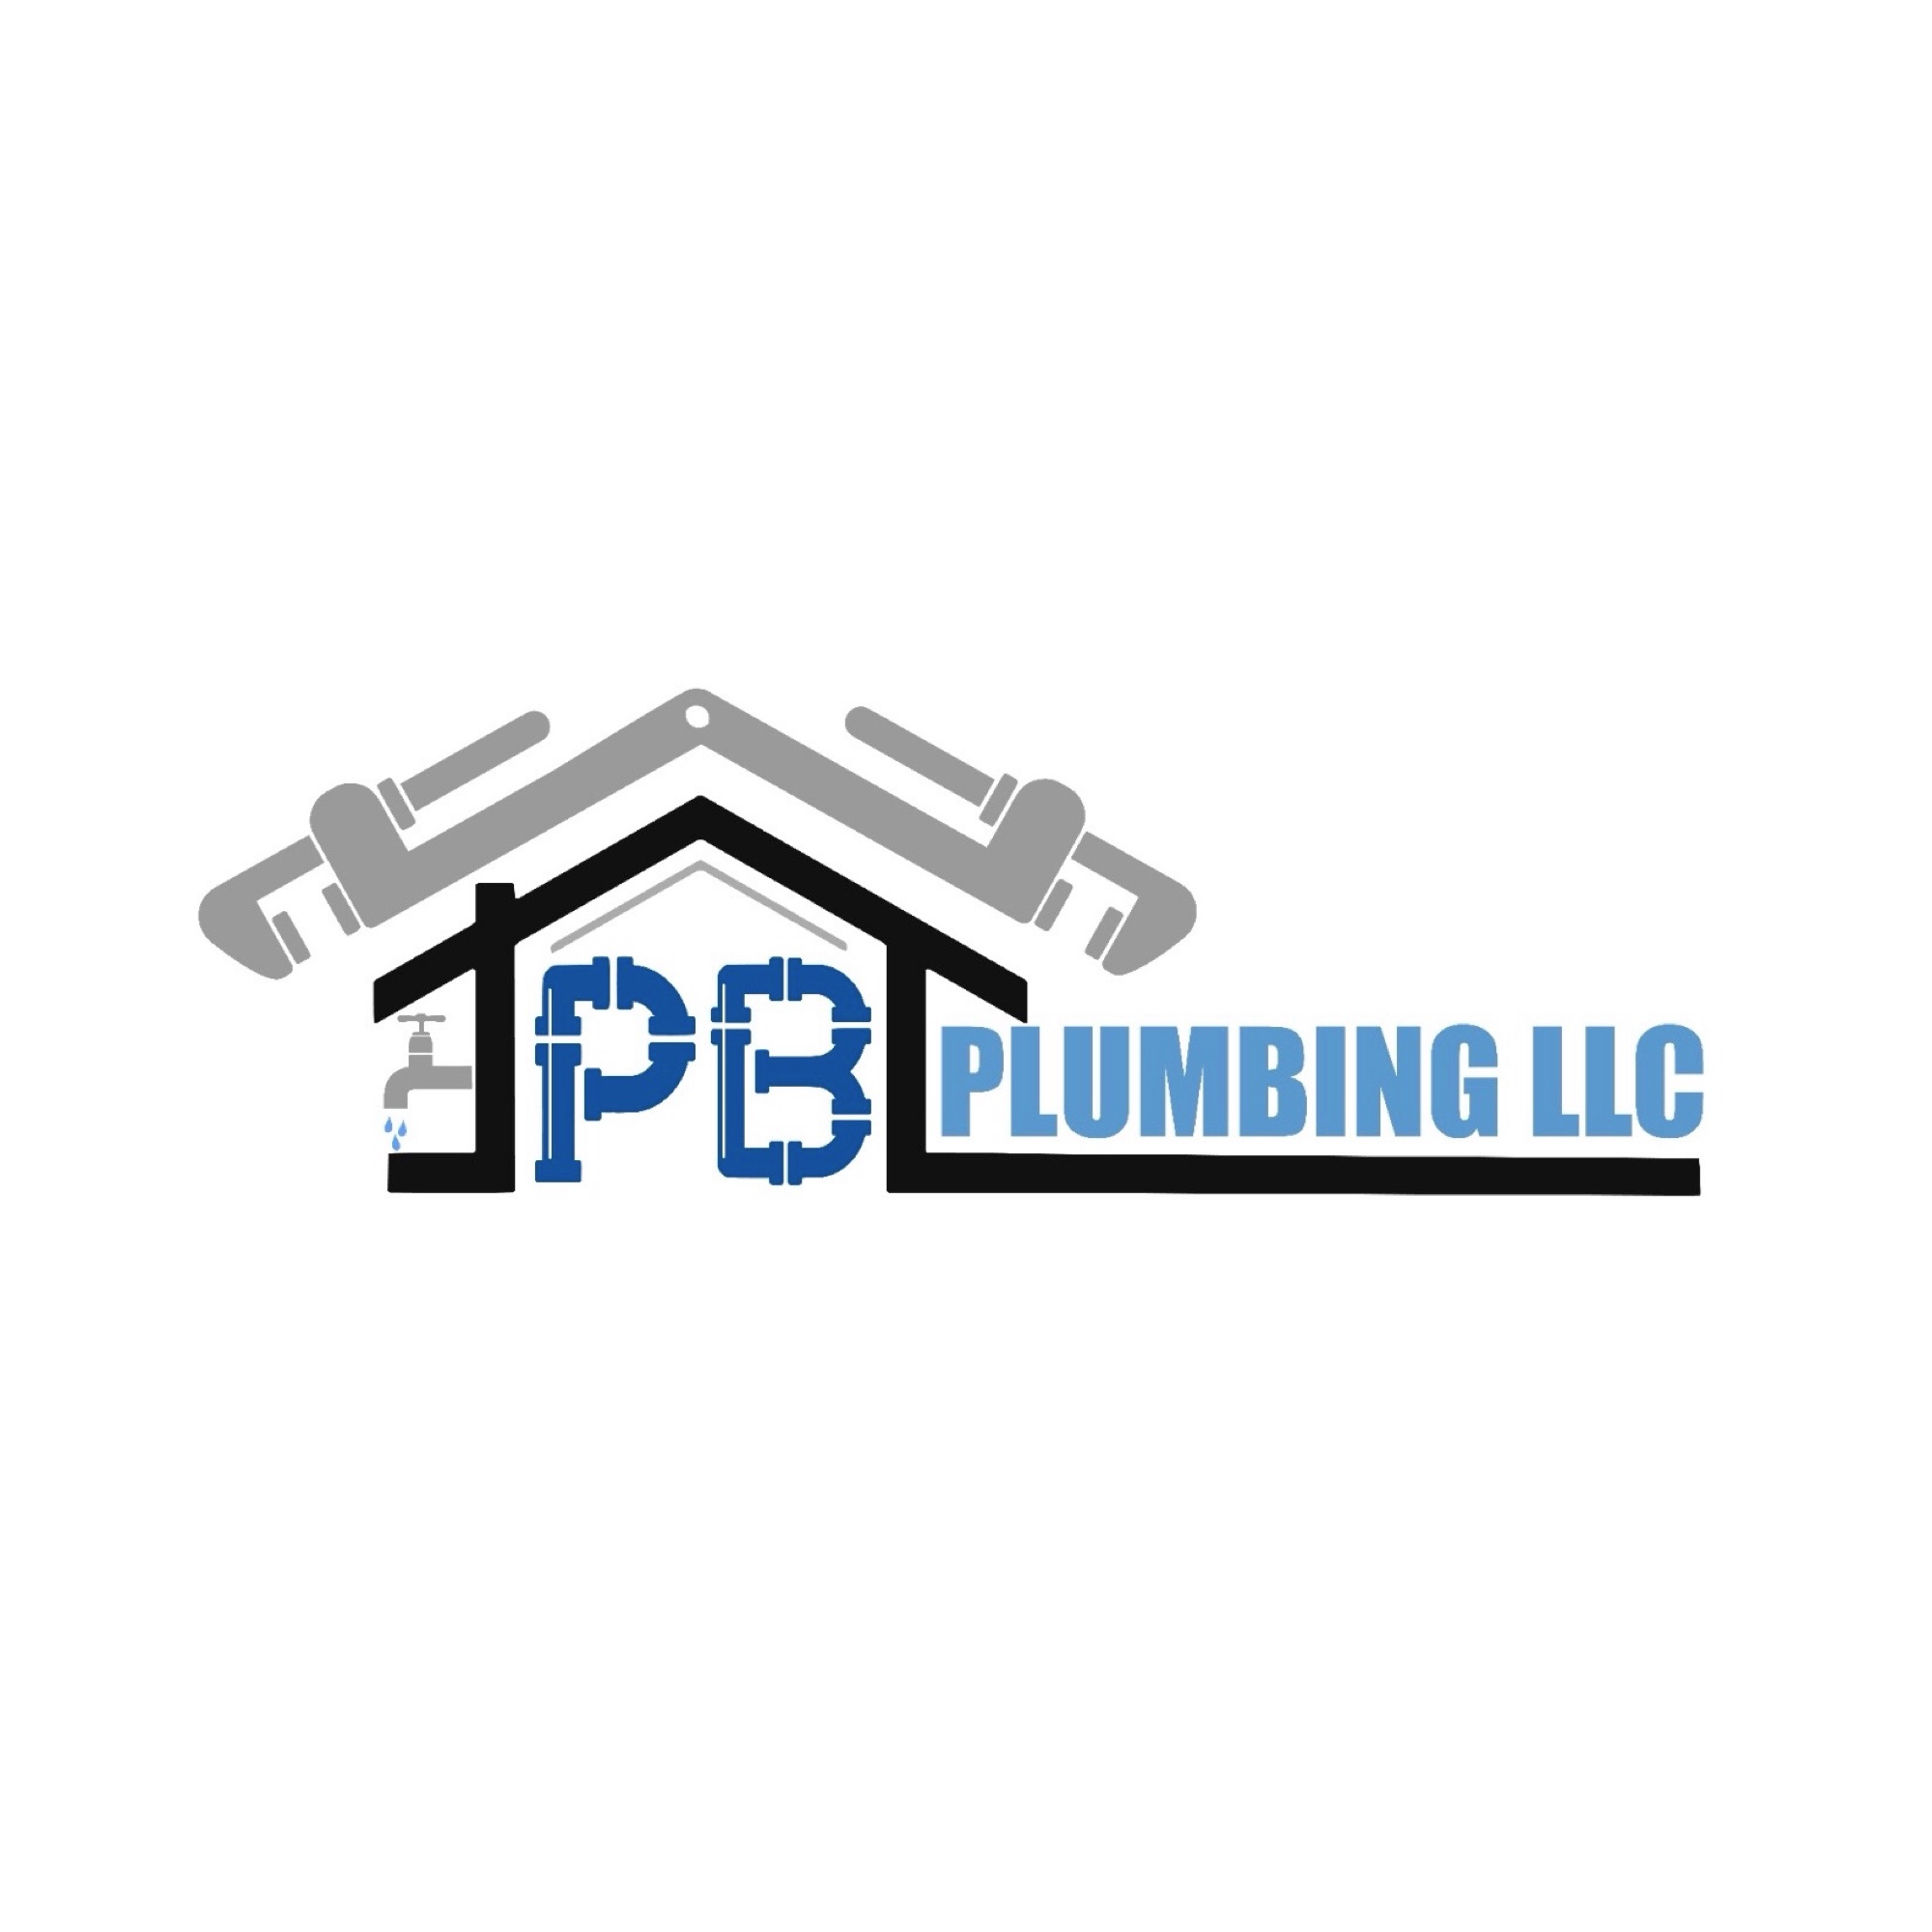 PB Plumbing, LLC Logo